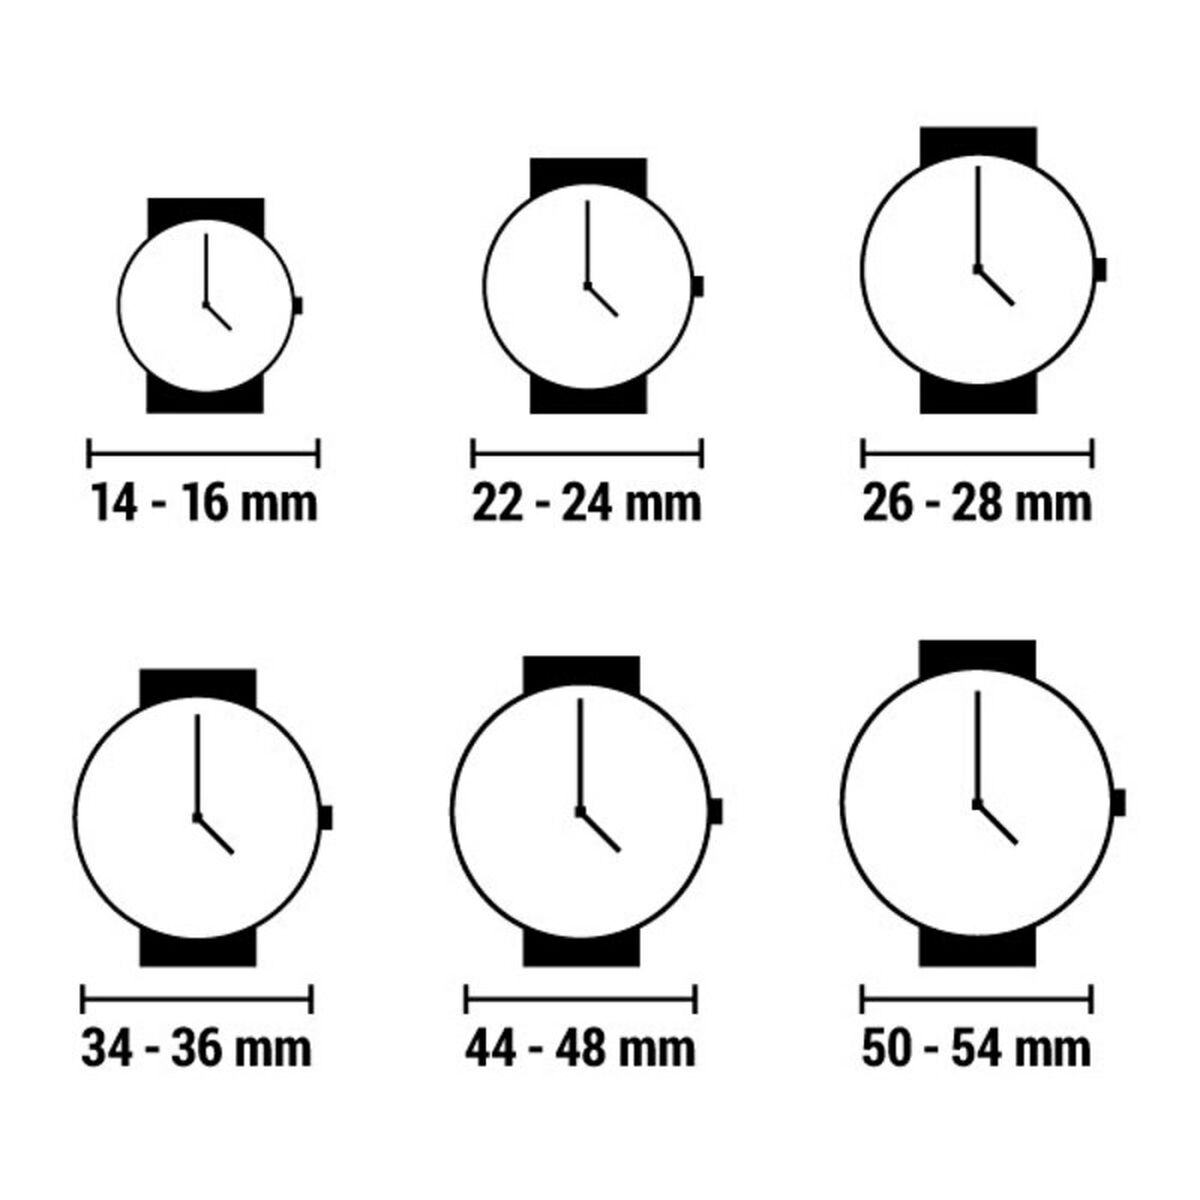 Horloge Dames XTRESS XNA1034-02 (Ø 40 mm)